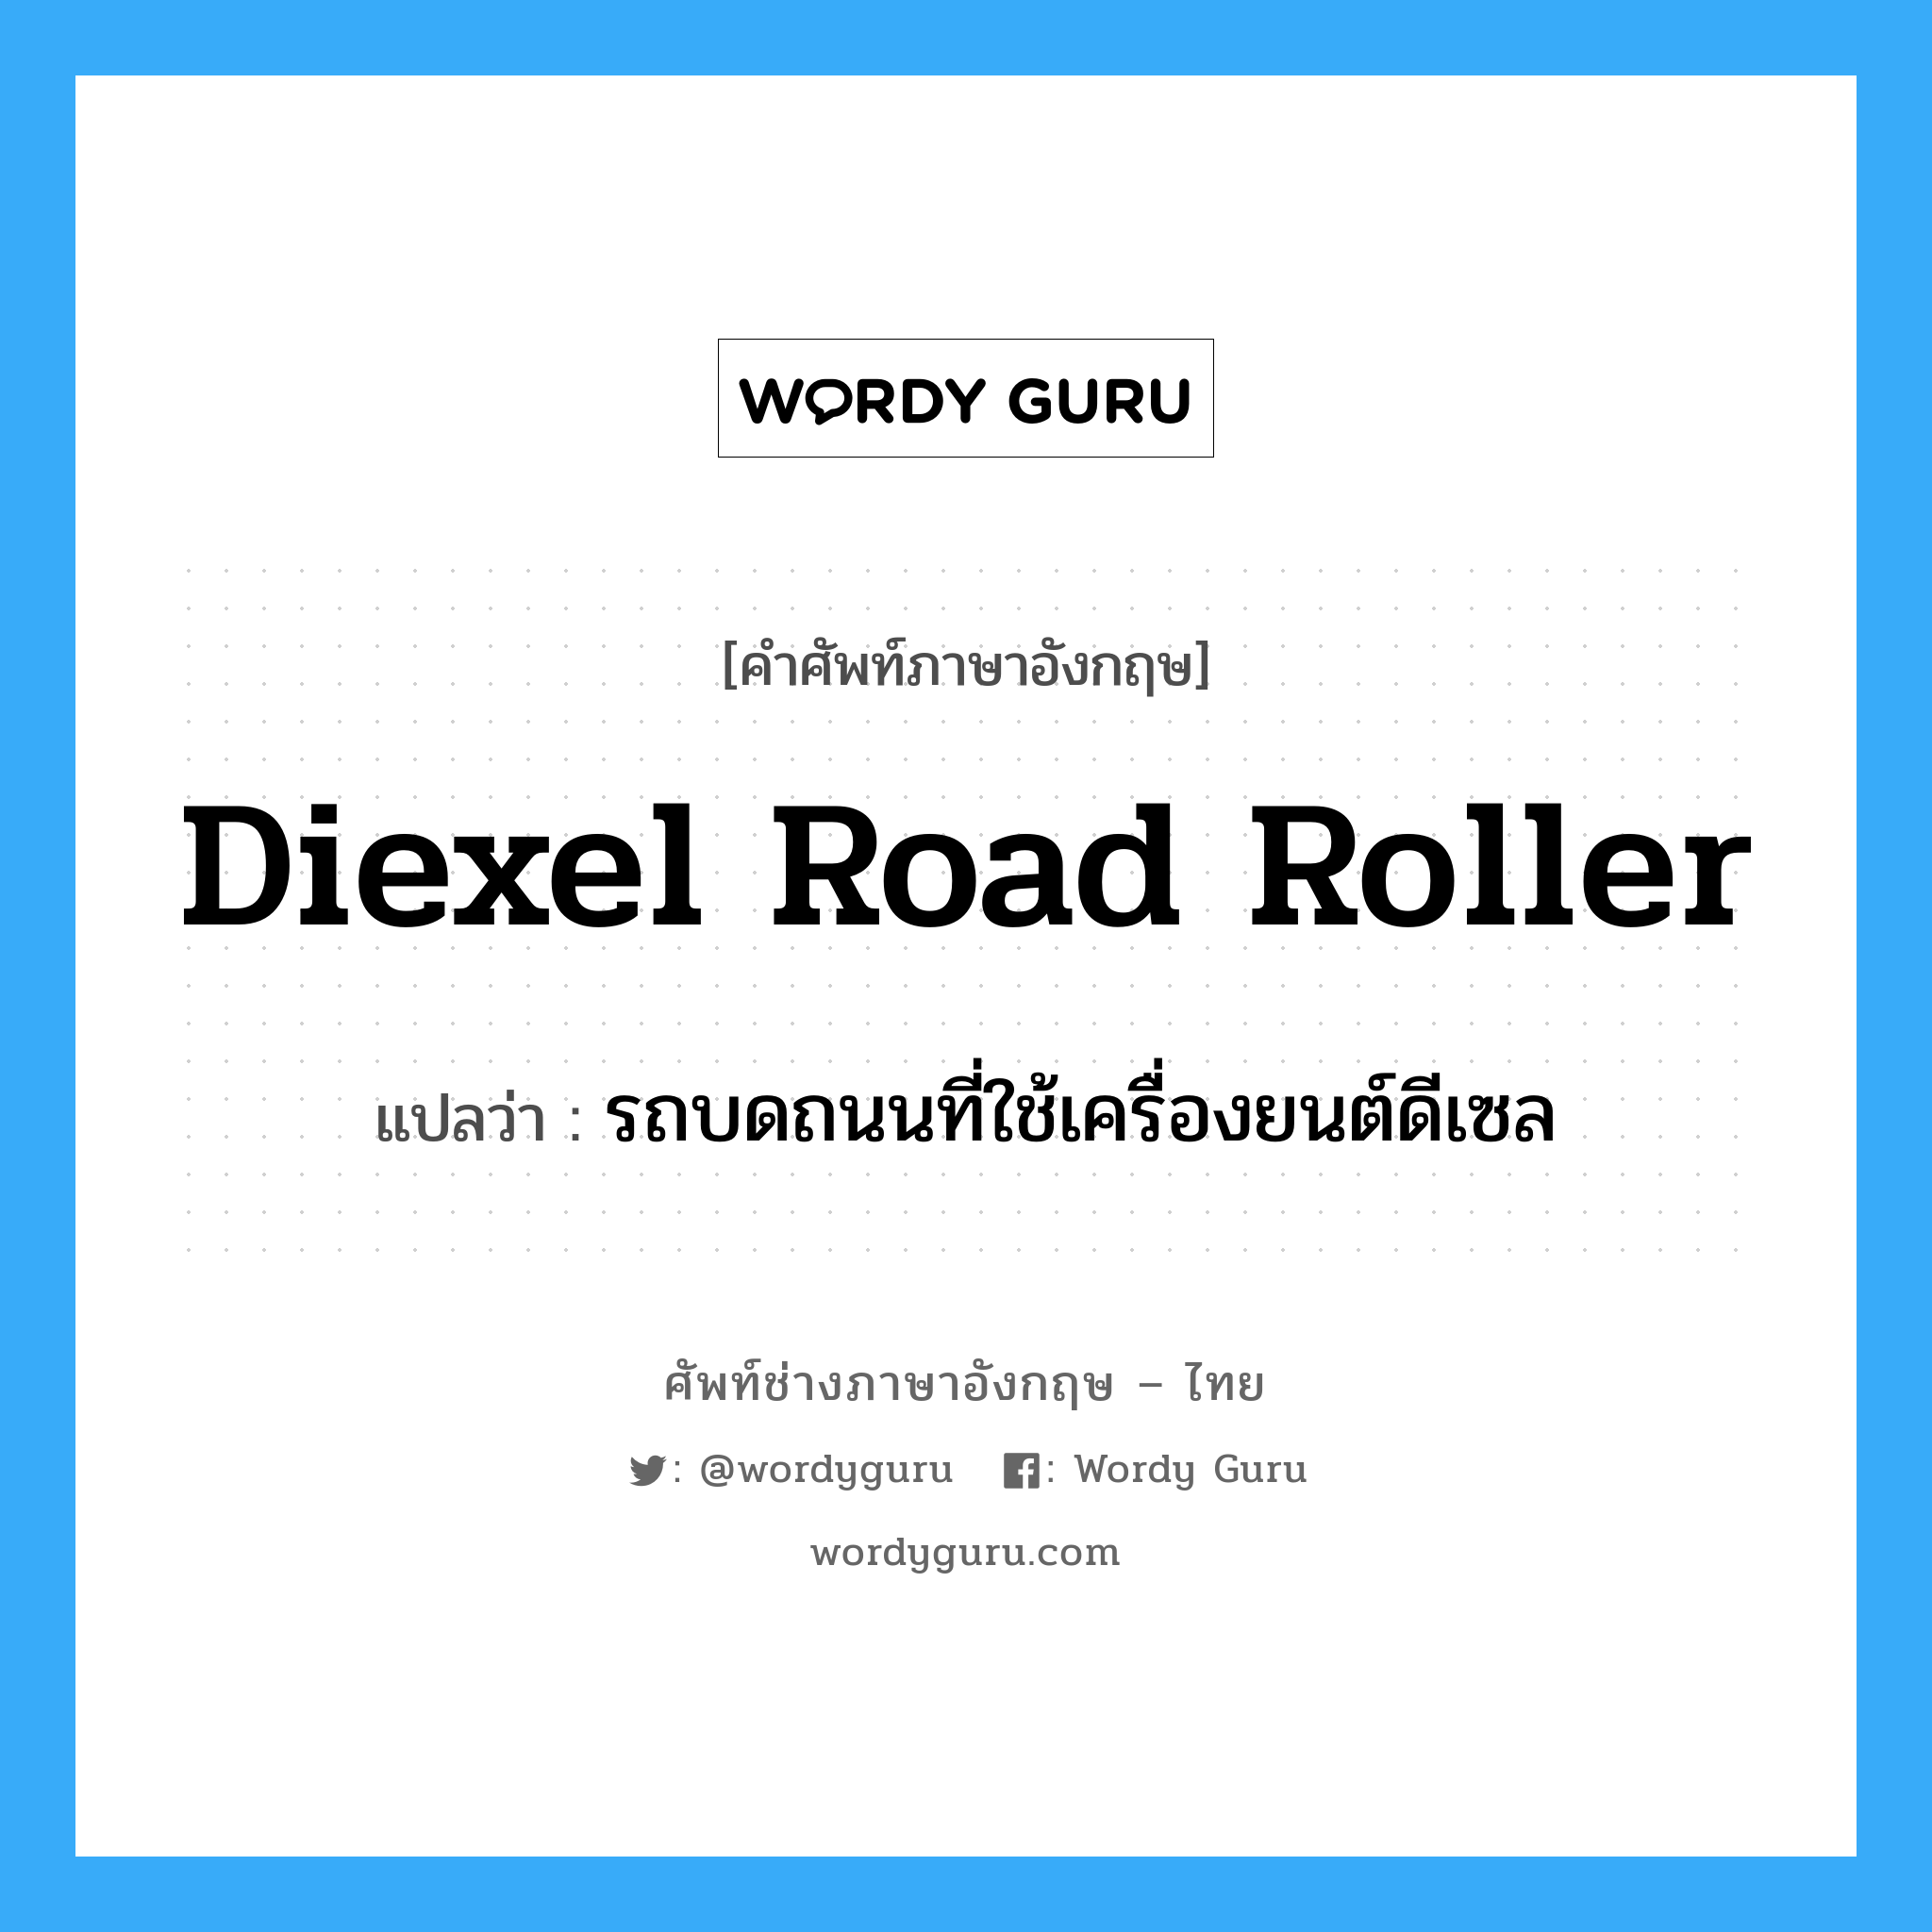 รถบดถนนที่ใช้เครื่องยนต์ดีเซล ภาษาอังกฤษ?, คำศัพท์ช่างภาษาอังกฤษ - ไทย รถบดถนนที่ใช้เครื่องยนต์ดีเซล คำศัพท์ภาษาอังกฤษ รถบดถนนที่ใช้เครื่องยนต์ดีเซล แปลว่า diexel road roller